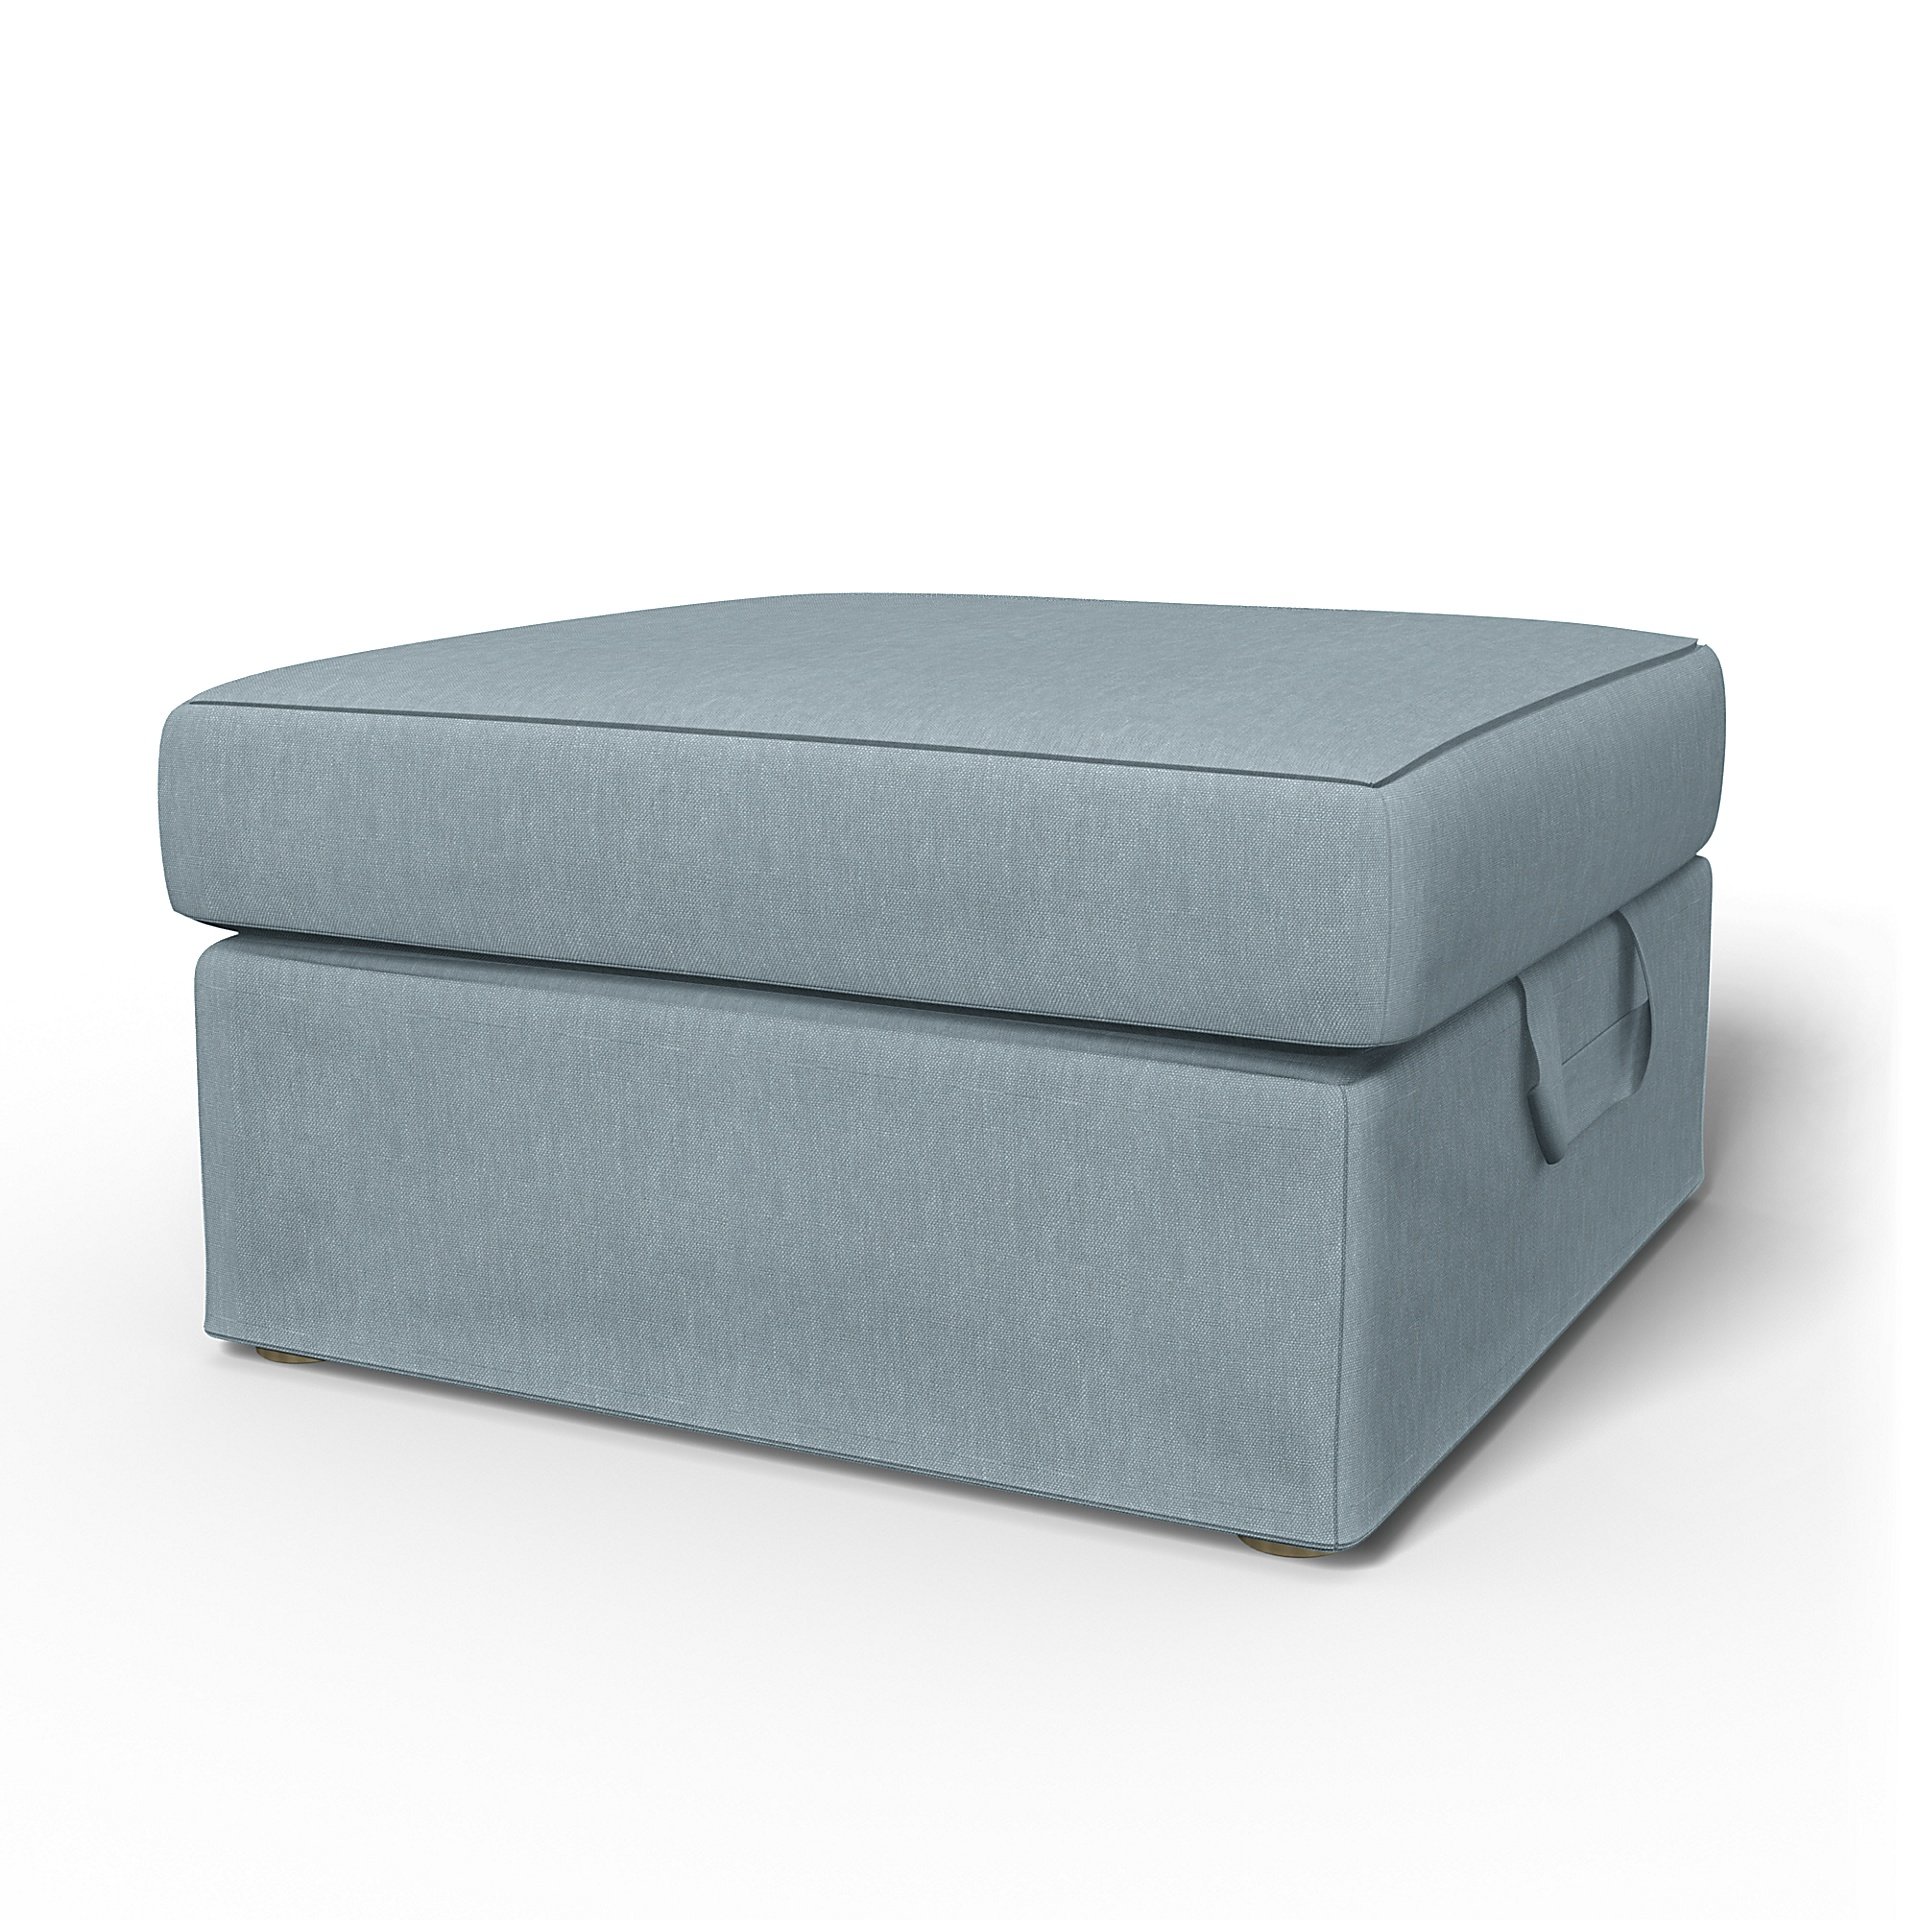 IKEA - Tomelilla Foto Footstool Cover, Dusty Blue, Linen - Bemz